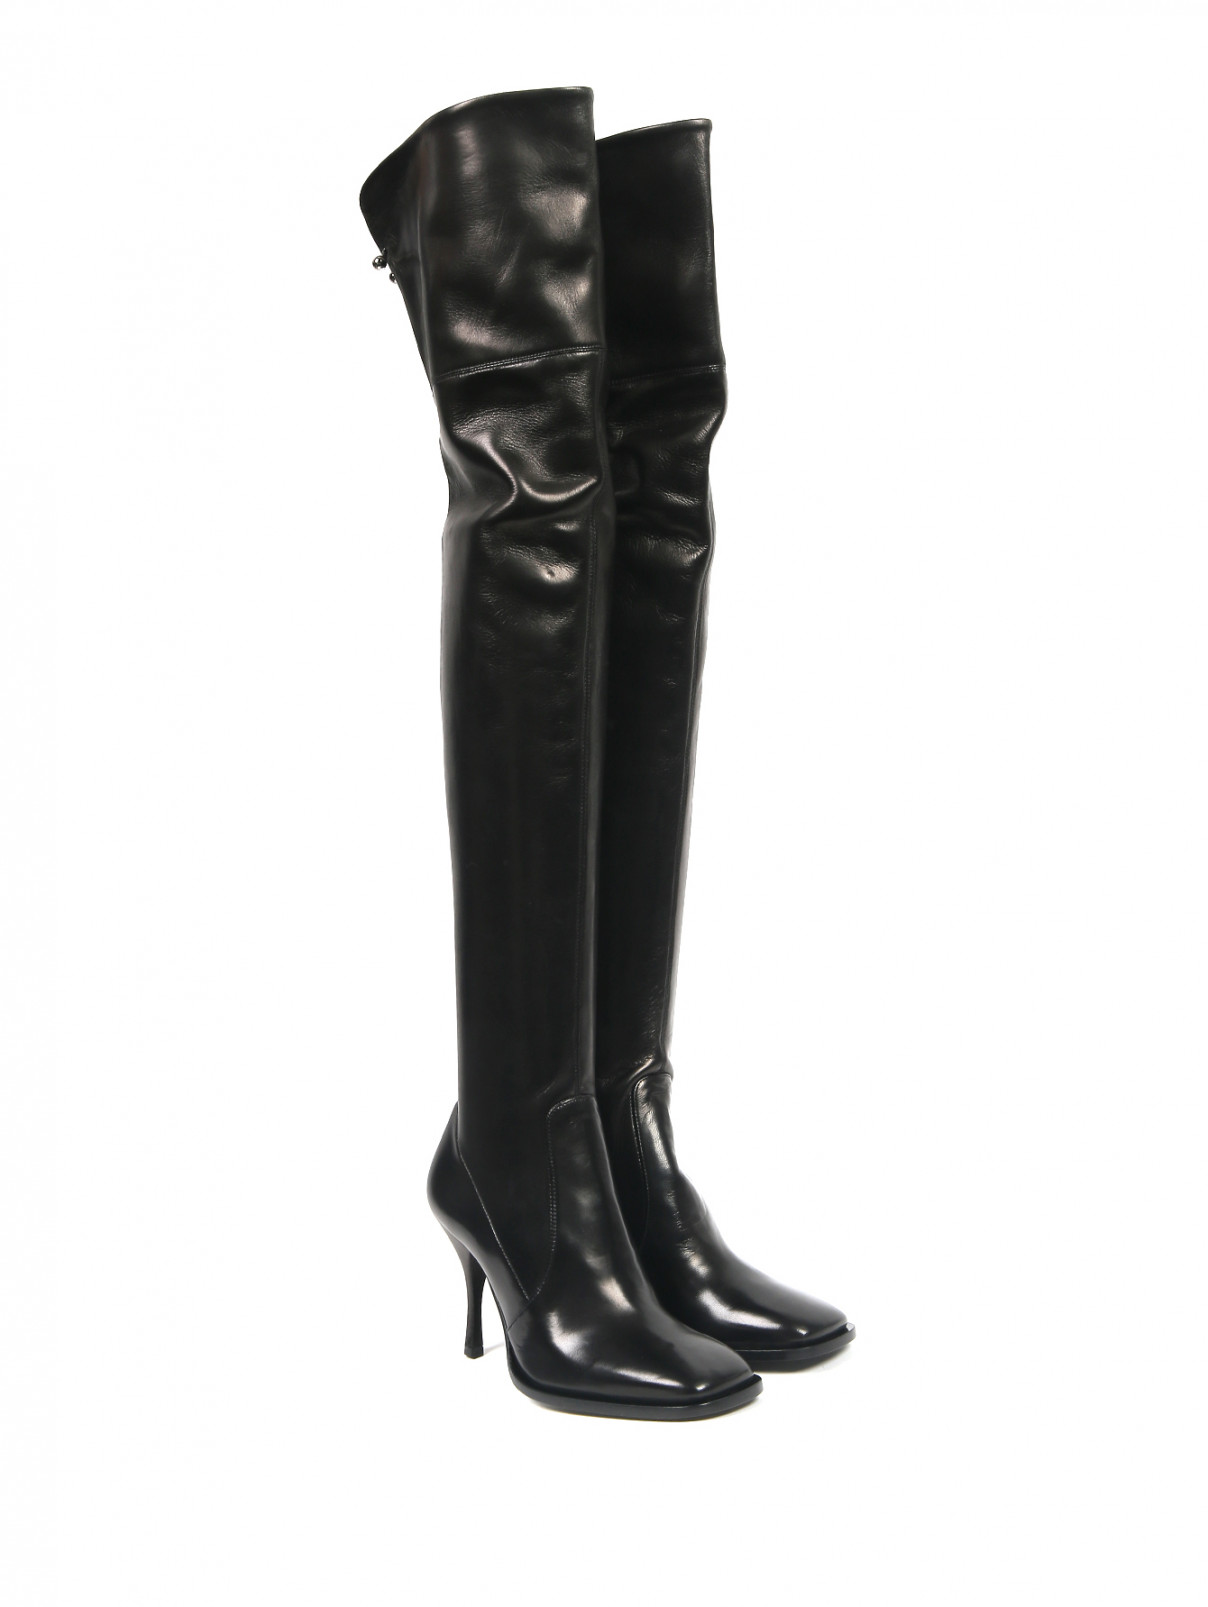 Сапоги-ботфорты из кожи на каблуке Ermanno Scervino  –  Общий вид  – Цвет:  Черный